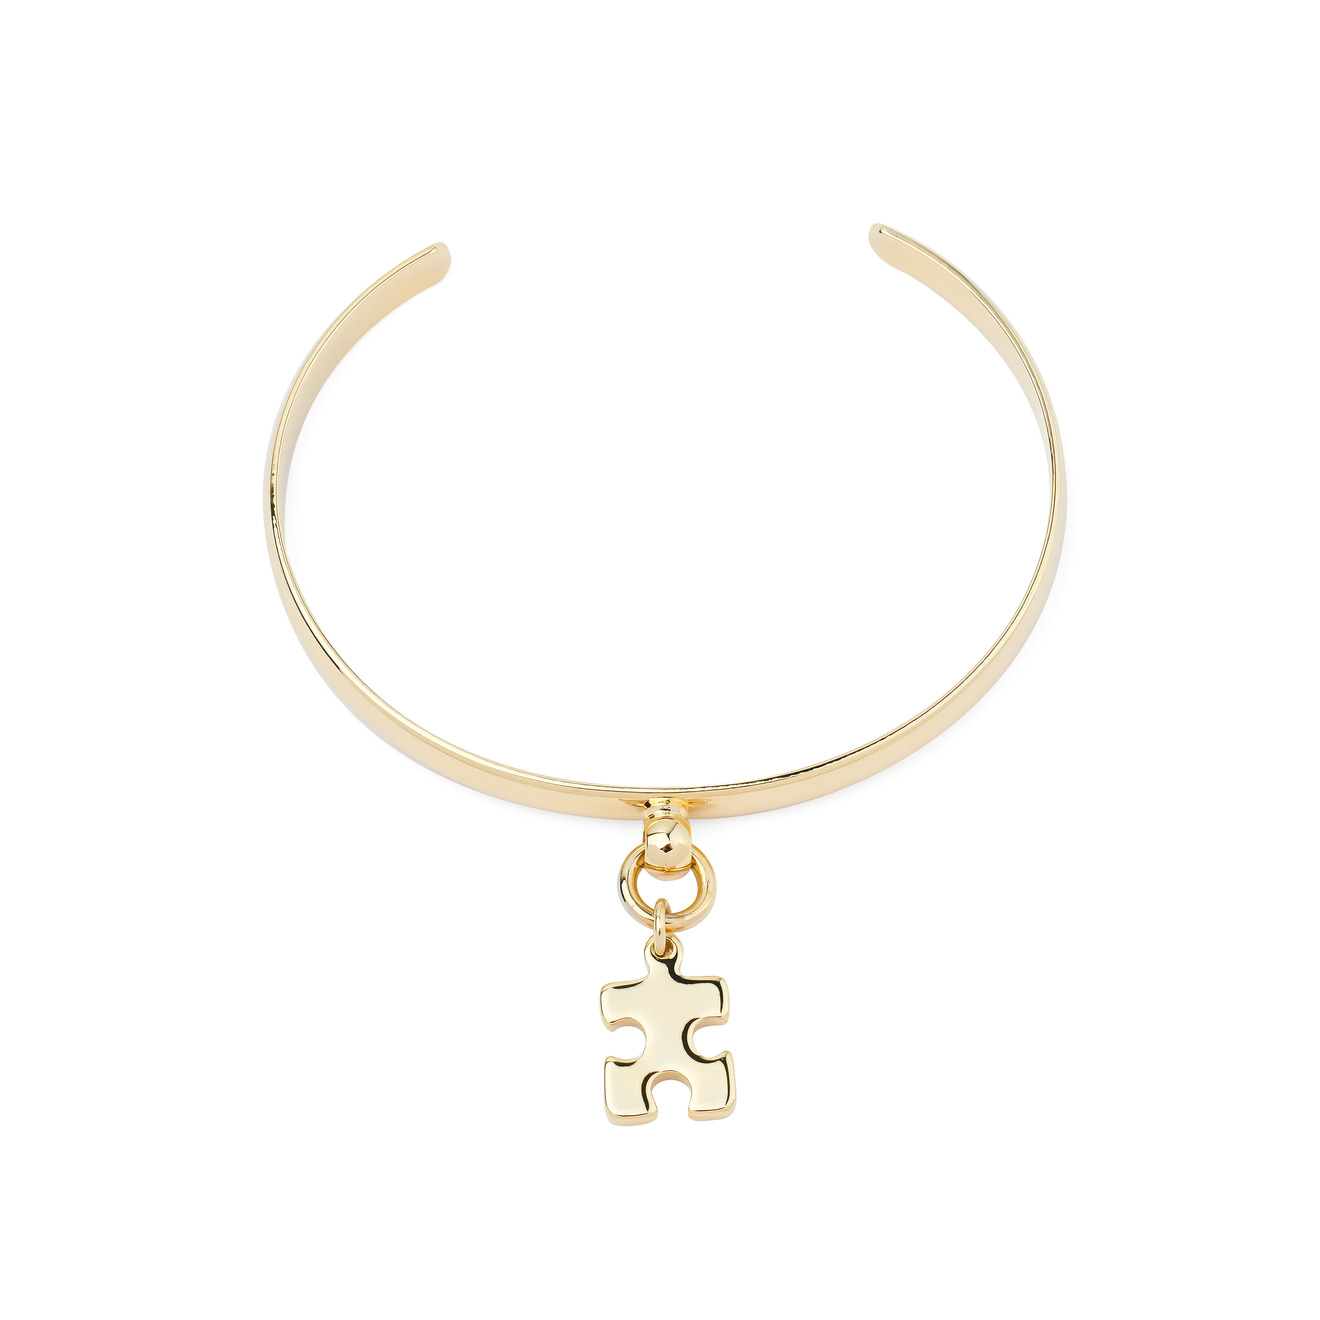 Aqua Золотистый браслет с подвеской-пазлом aqua золотистый браслет с медальоном с сердцем